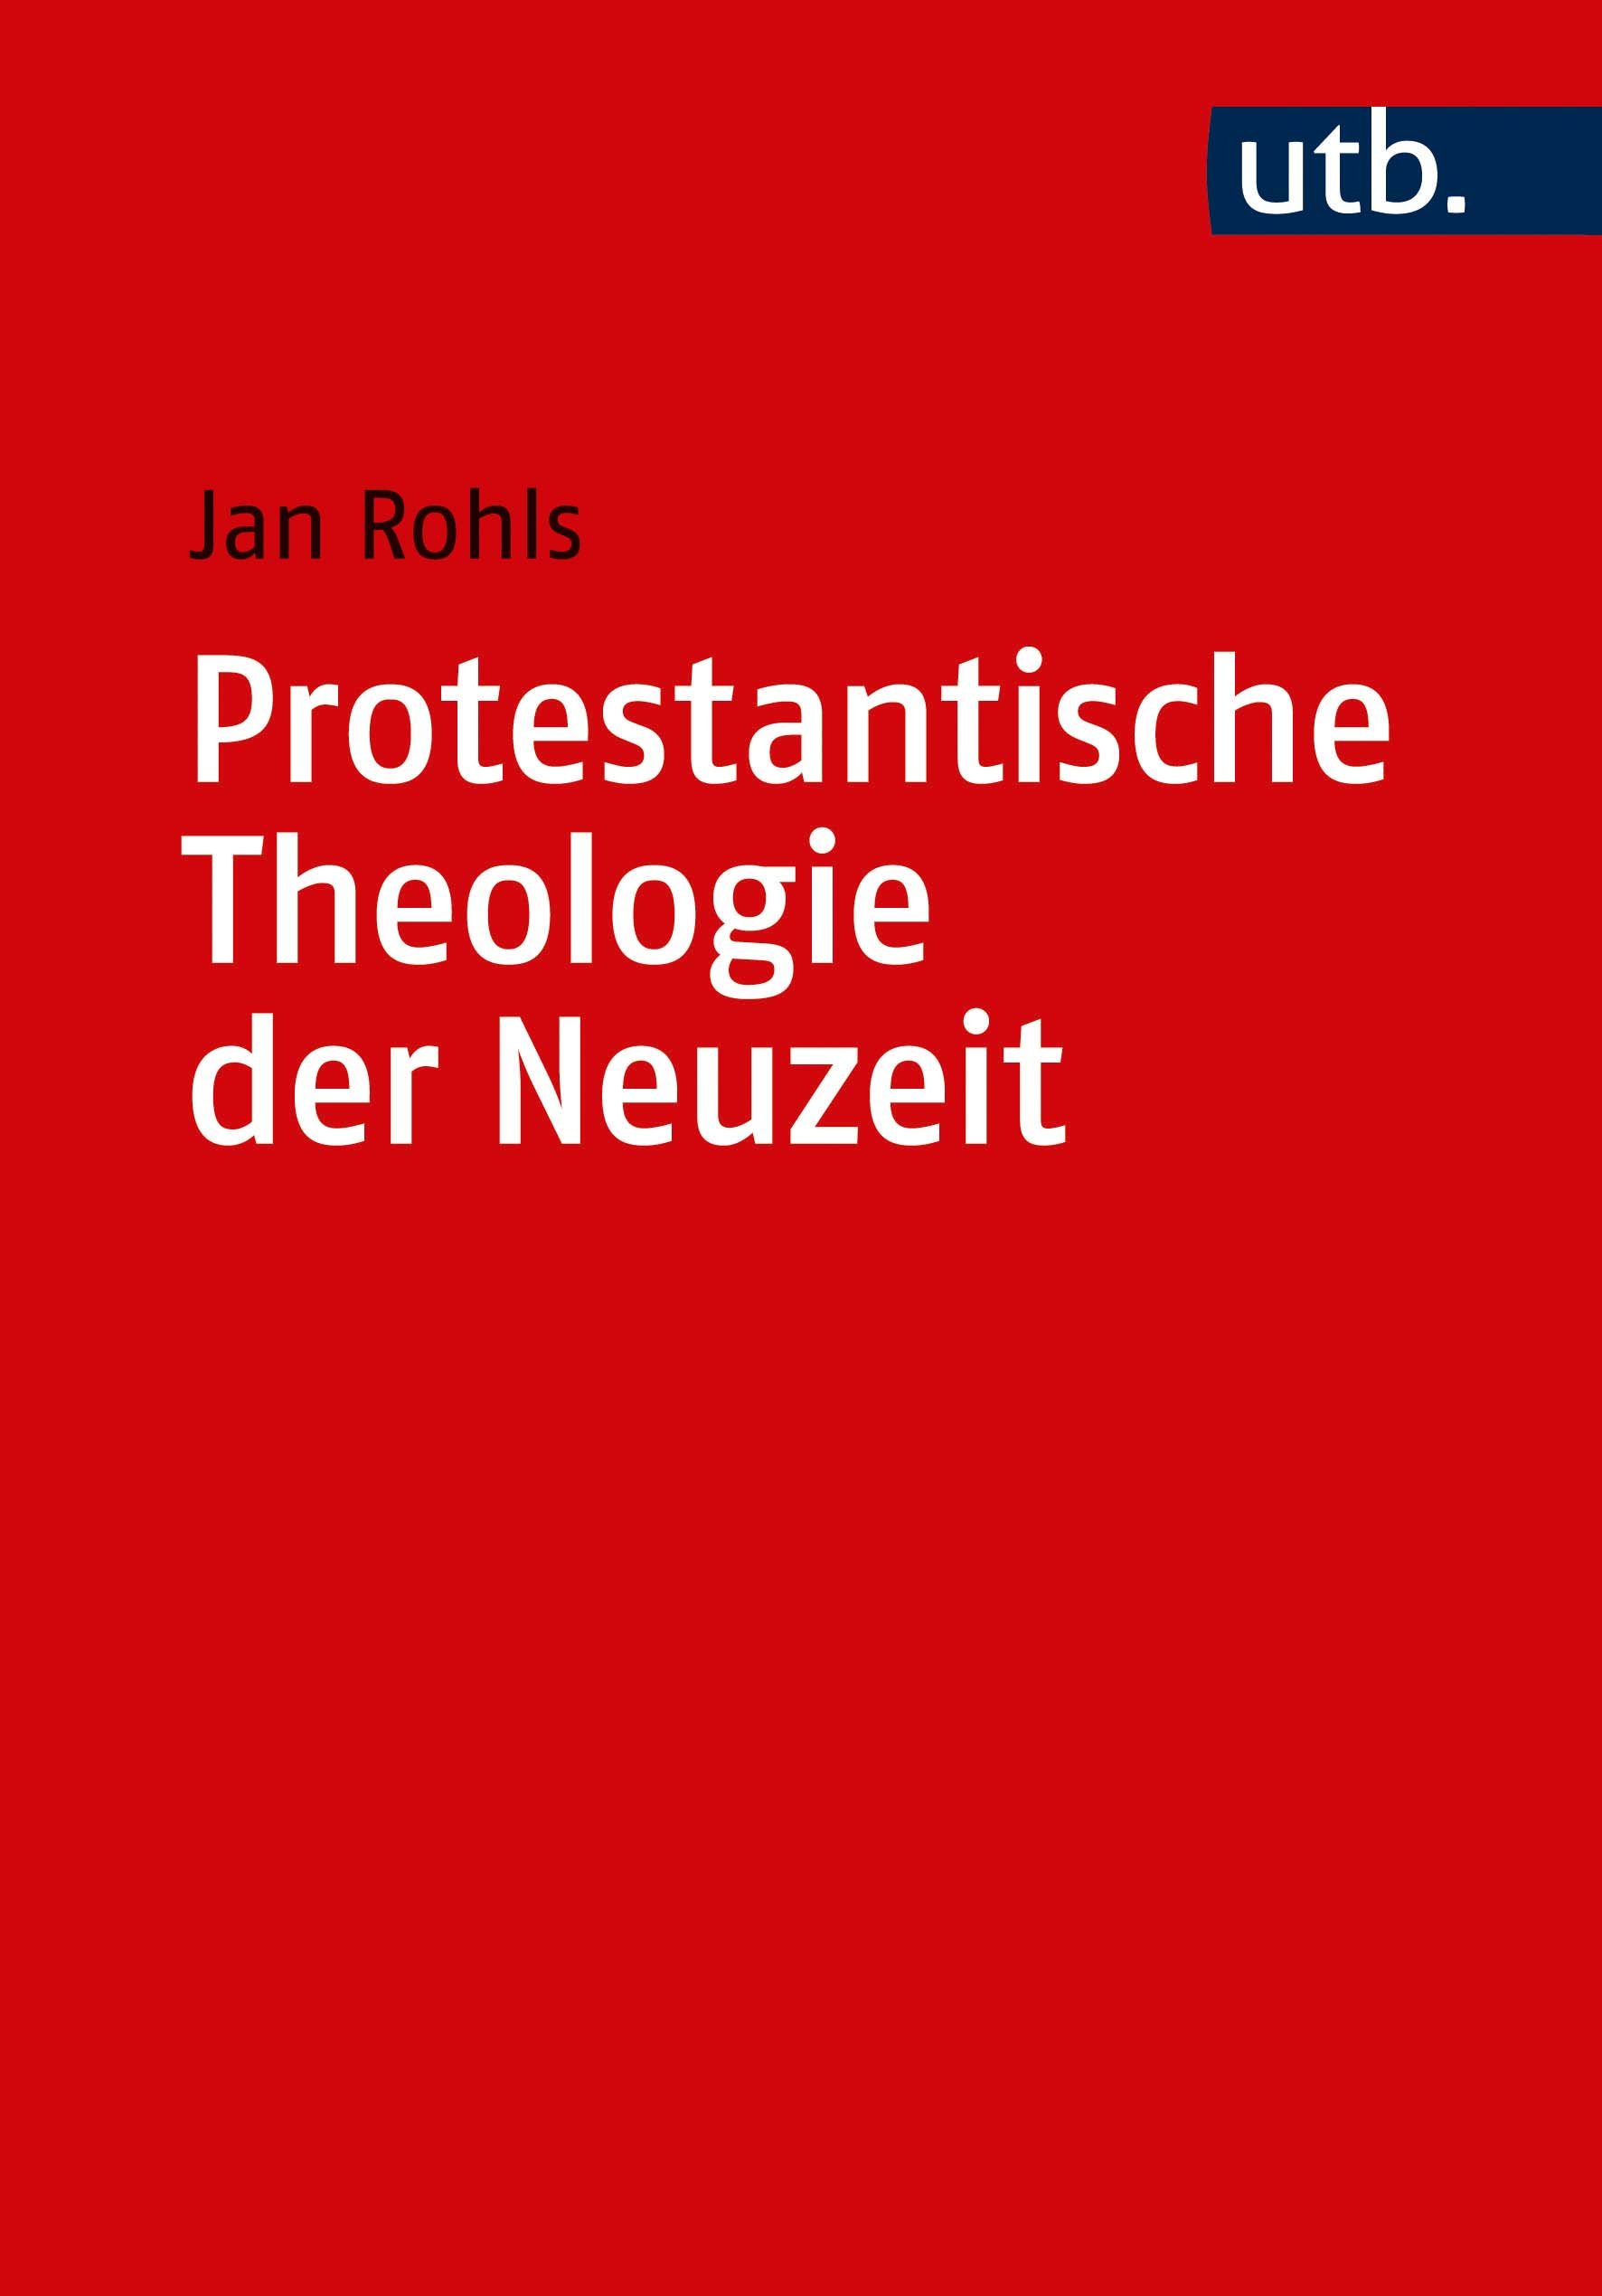 Kombipack Protestantische Theologie der Neuzeit Band 1 & 2